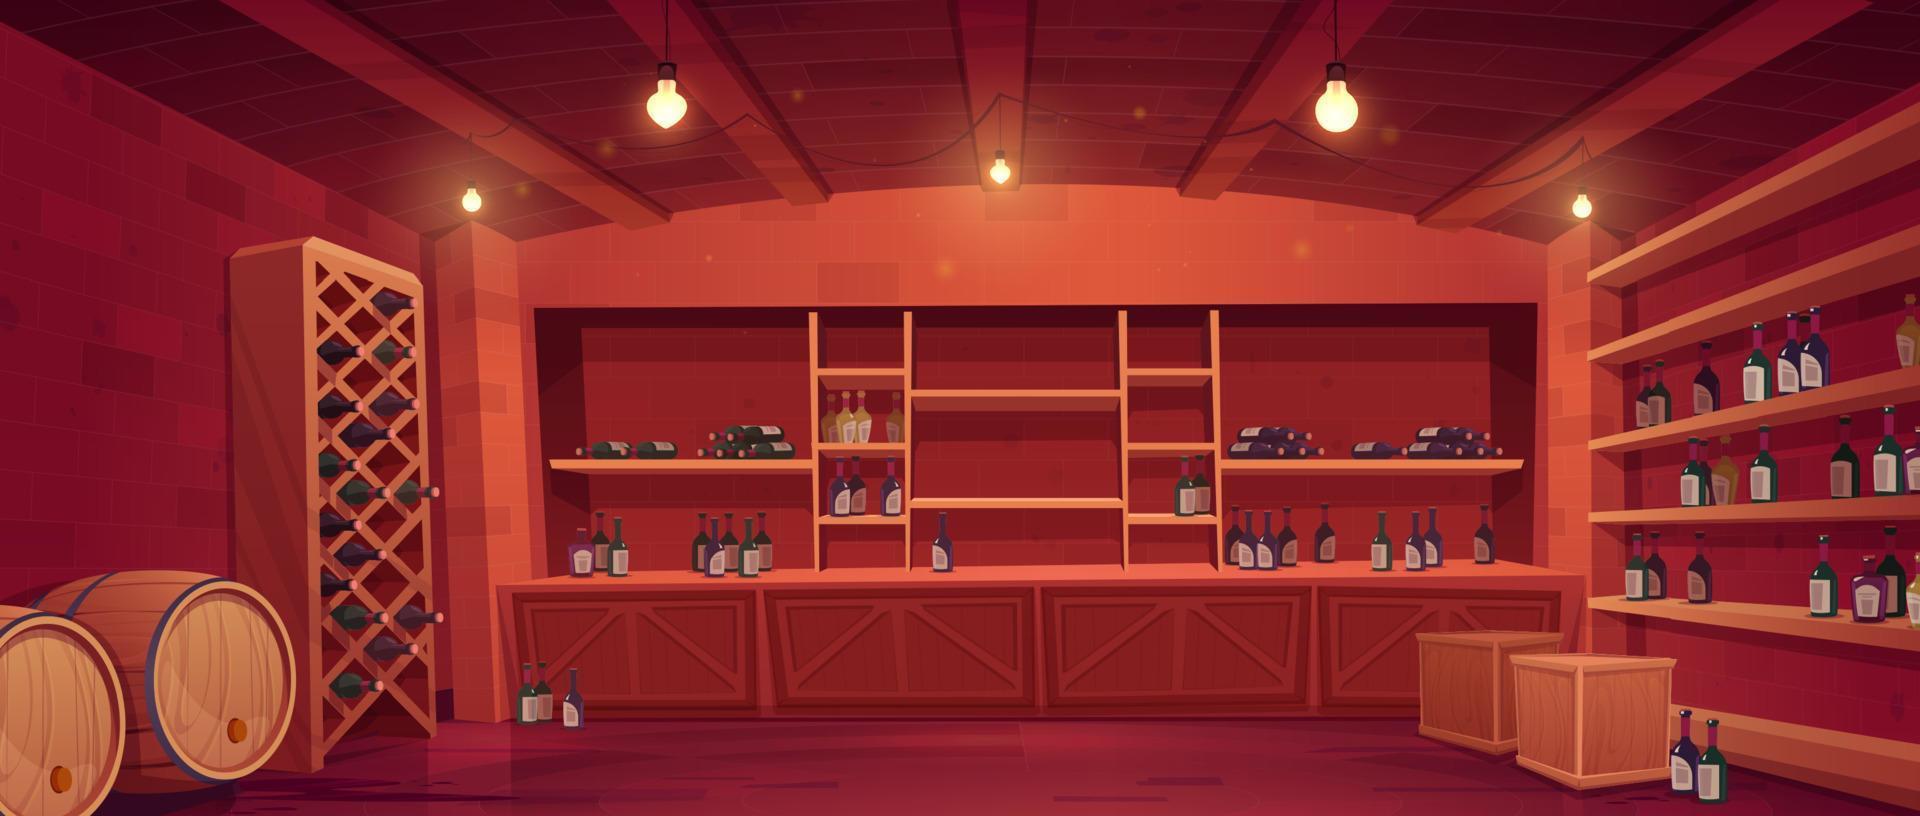 tienda de vinos, interior de bodega con botellas en estantes vector